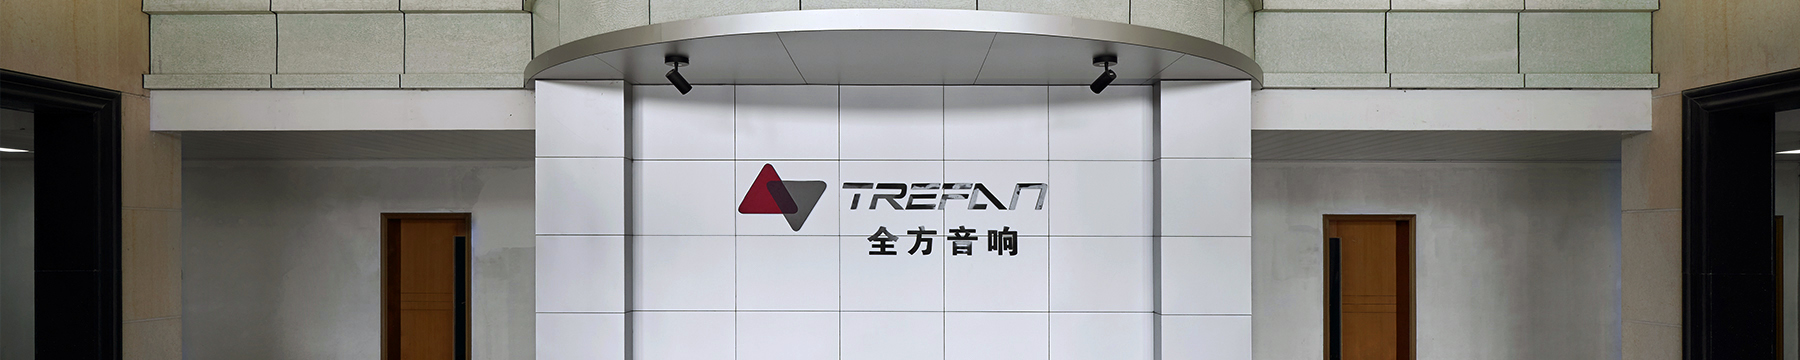 Zhejiang Trefan Technology Co., Ltd.